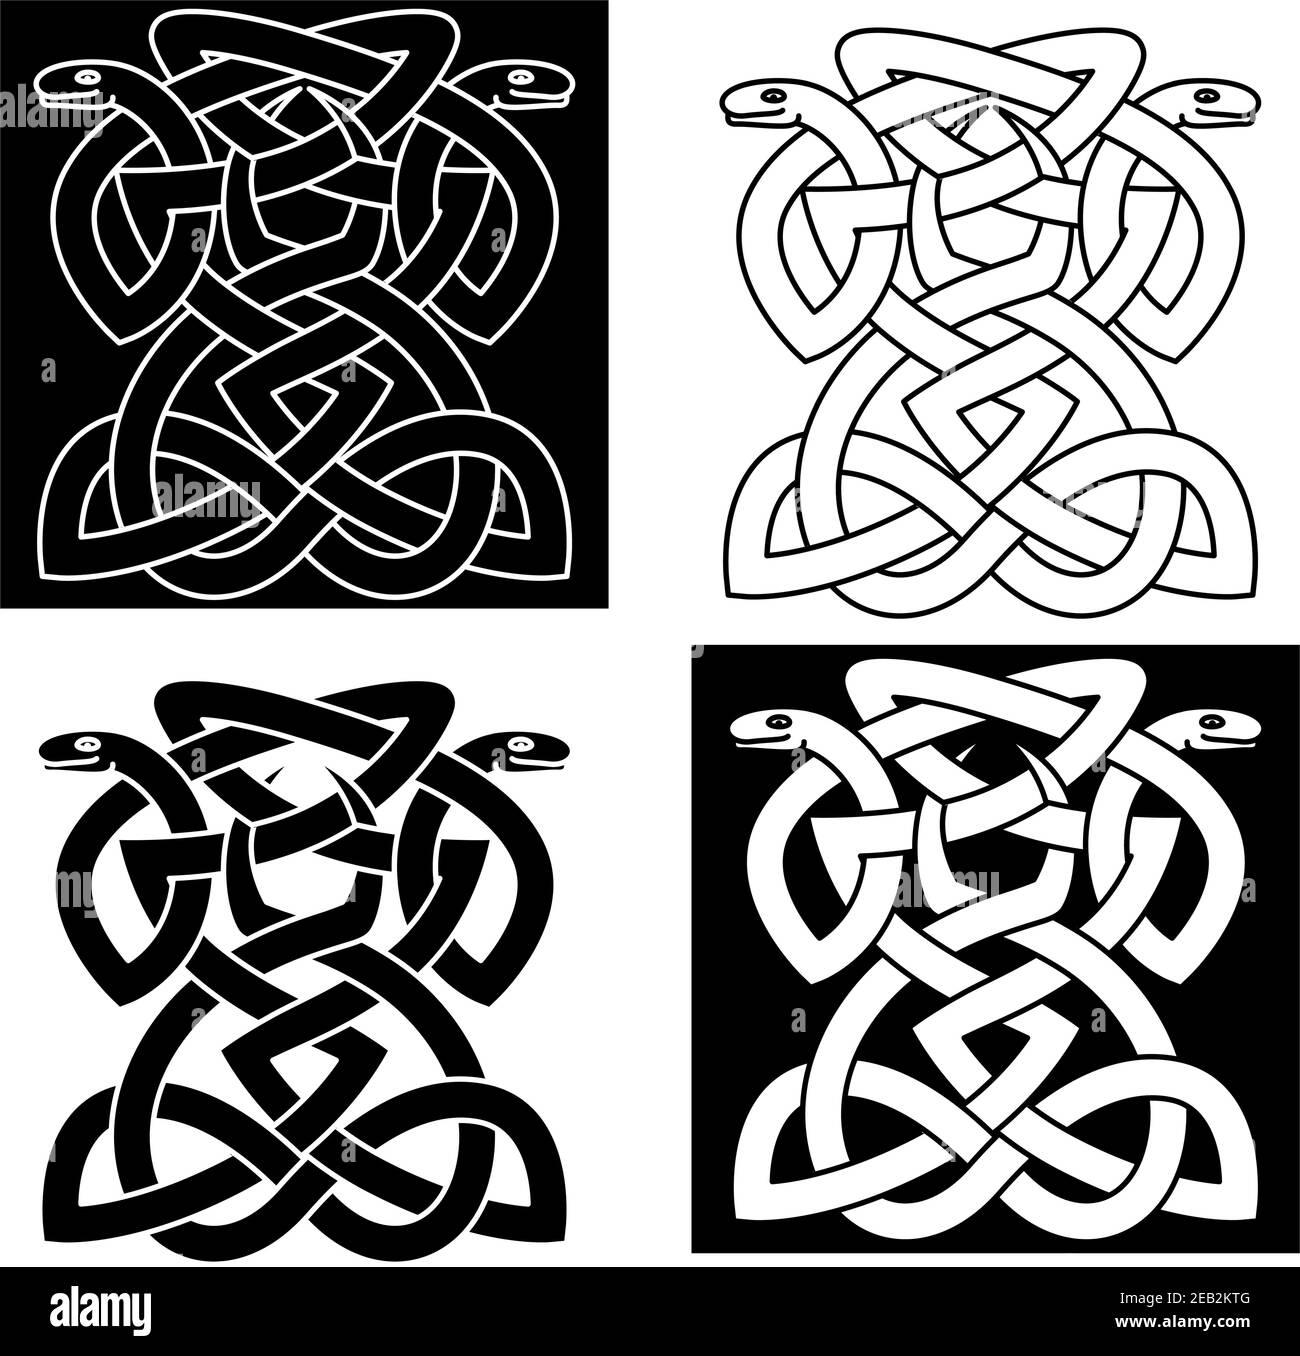 Intrincados emblemas de serpientes entrelazadas que forman un patrón geométrico en diferente variaciones para tatuajes elegantes o arte Ilustración del Vector